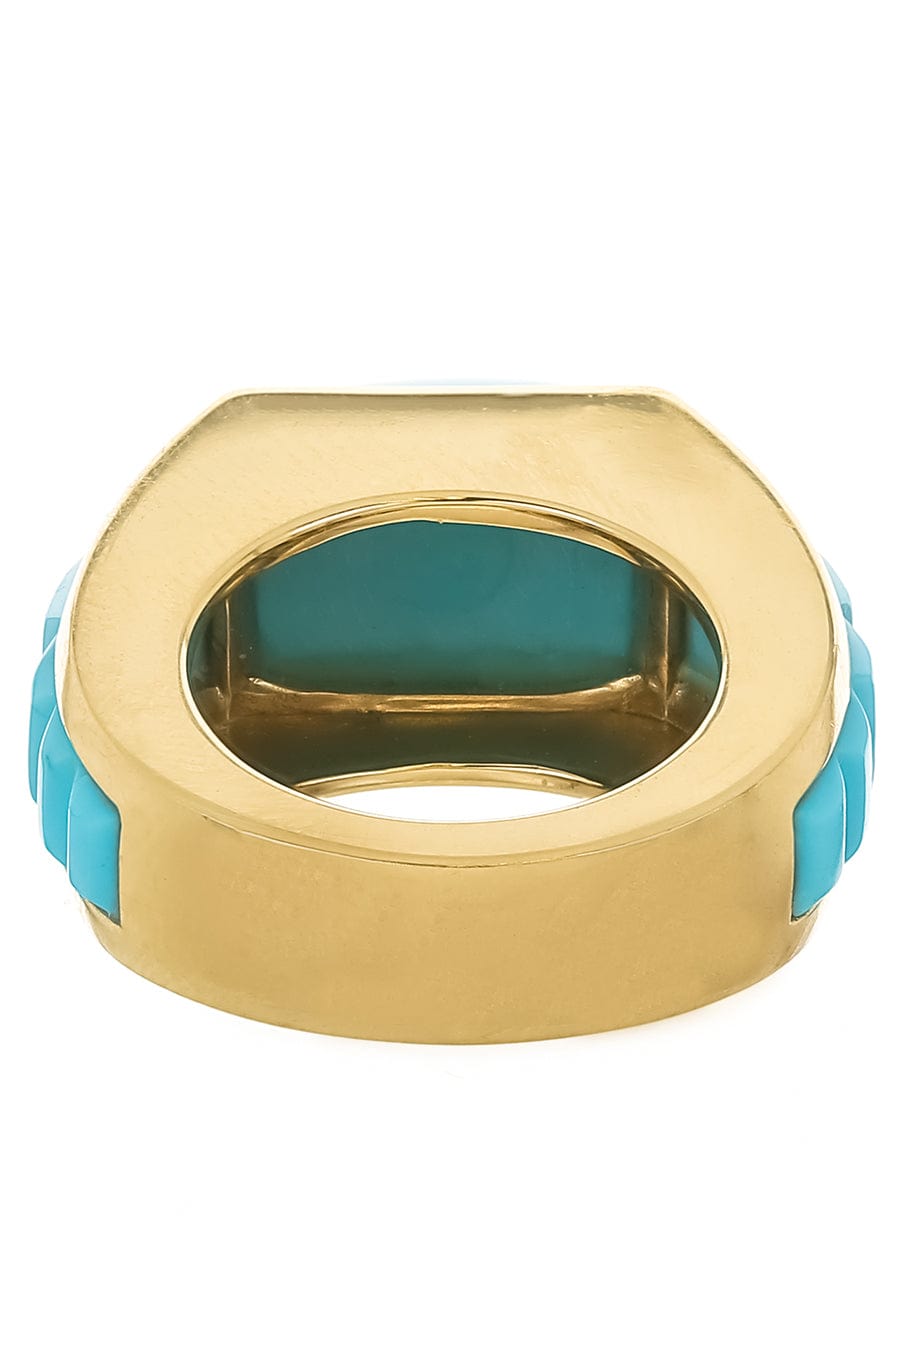 PIRANESI-Turquoise Sugarloaf Ring-YELLOW GOLD